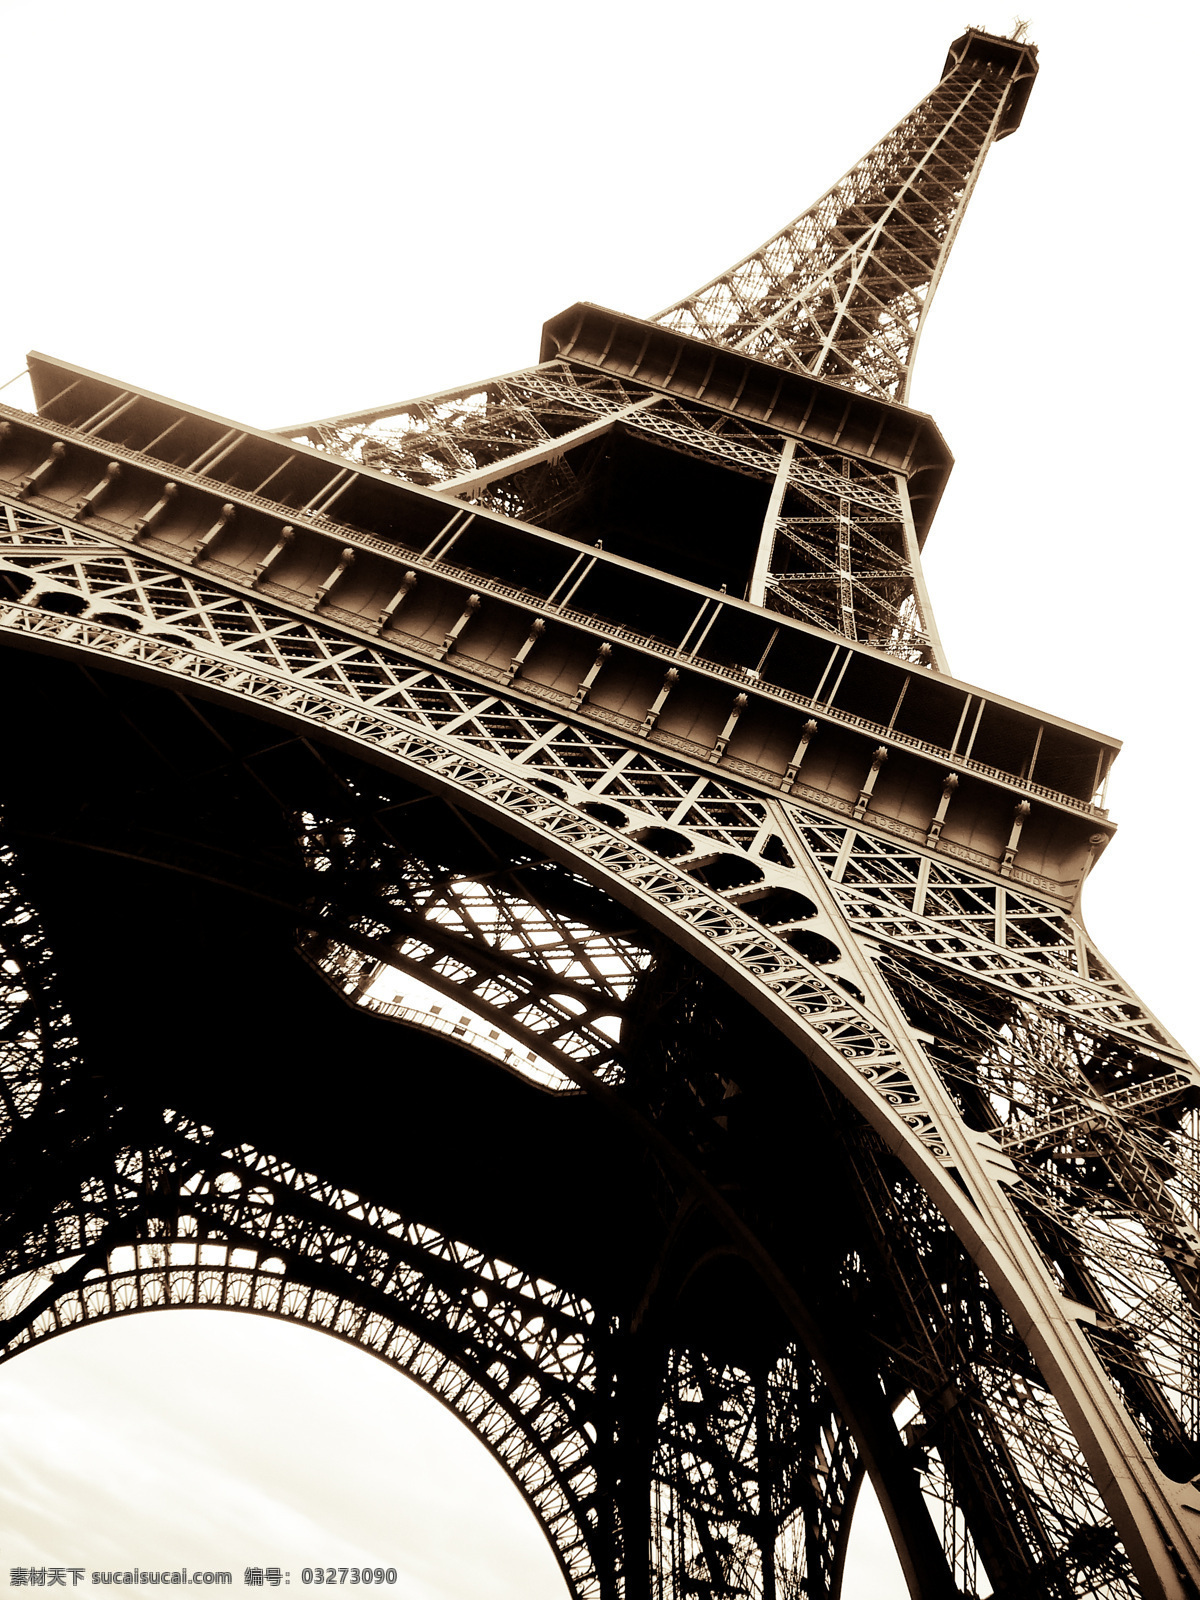 仰视 角度 艾菲尔铁塔 建筑风光 城市图片 法国建筑 巴黎风光 铁塔 都市风光 美丽风光 美丽风景 名胜古迹 旅游胜地 建筑设计 环境家居